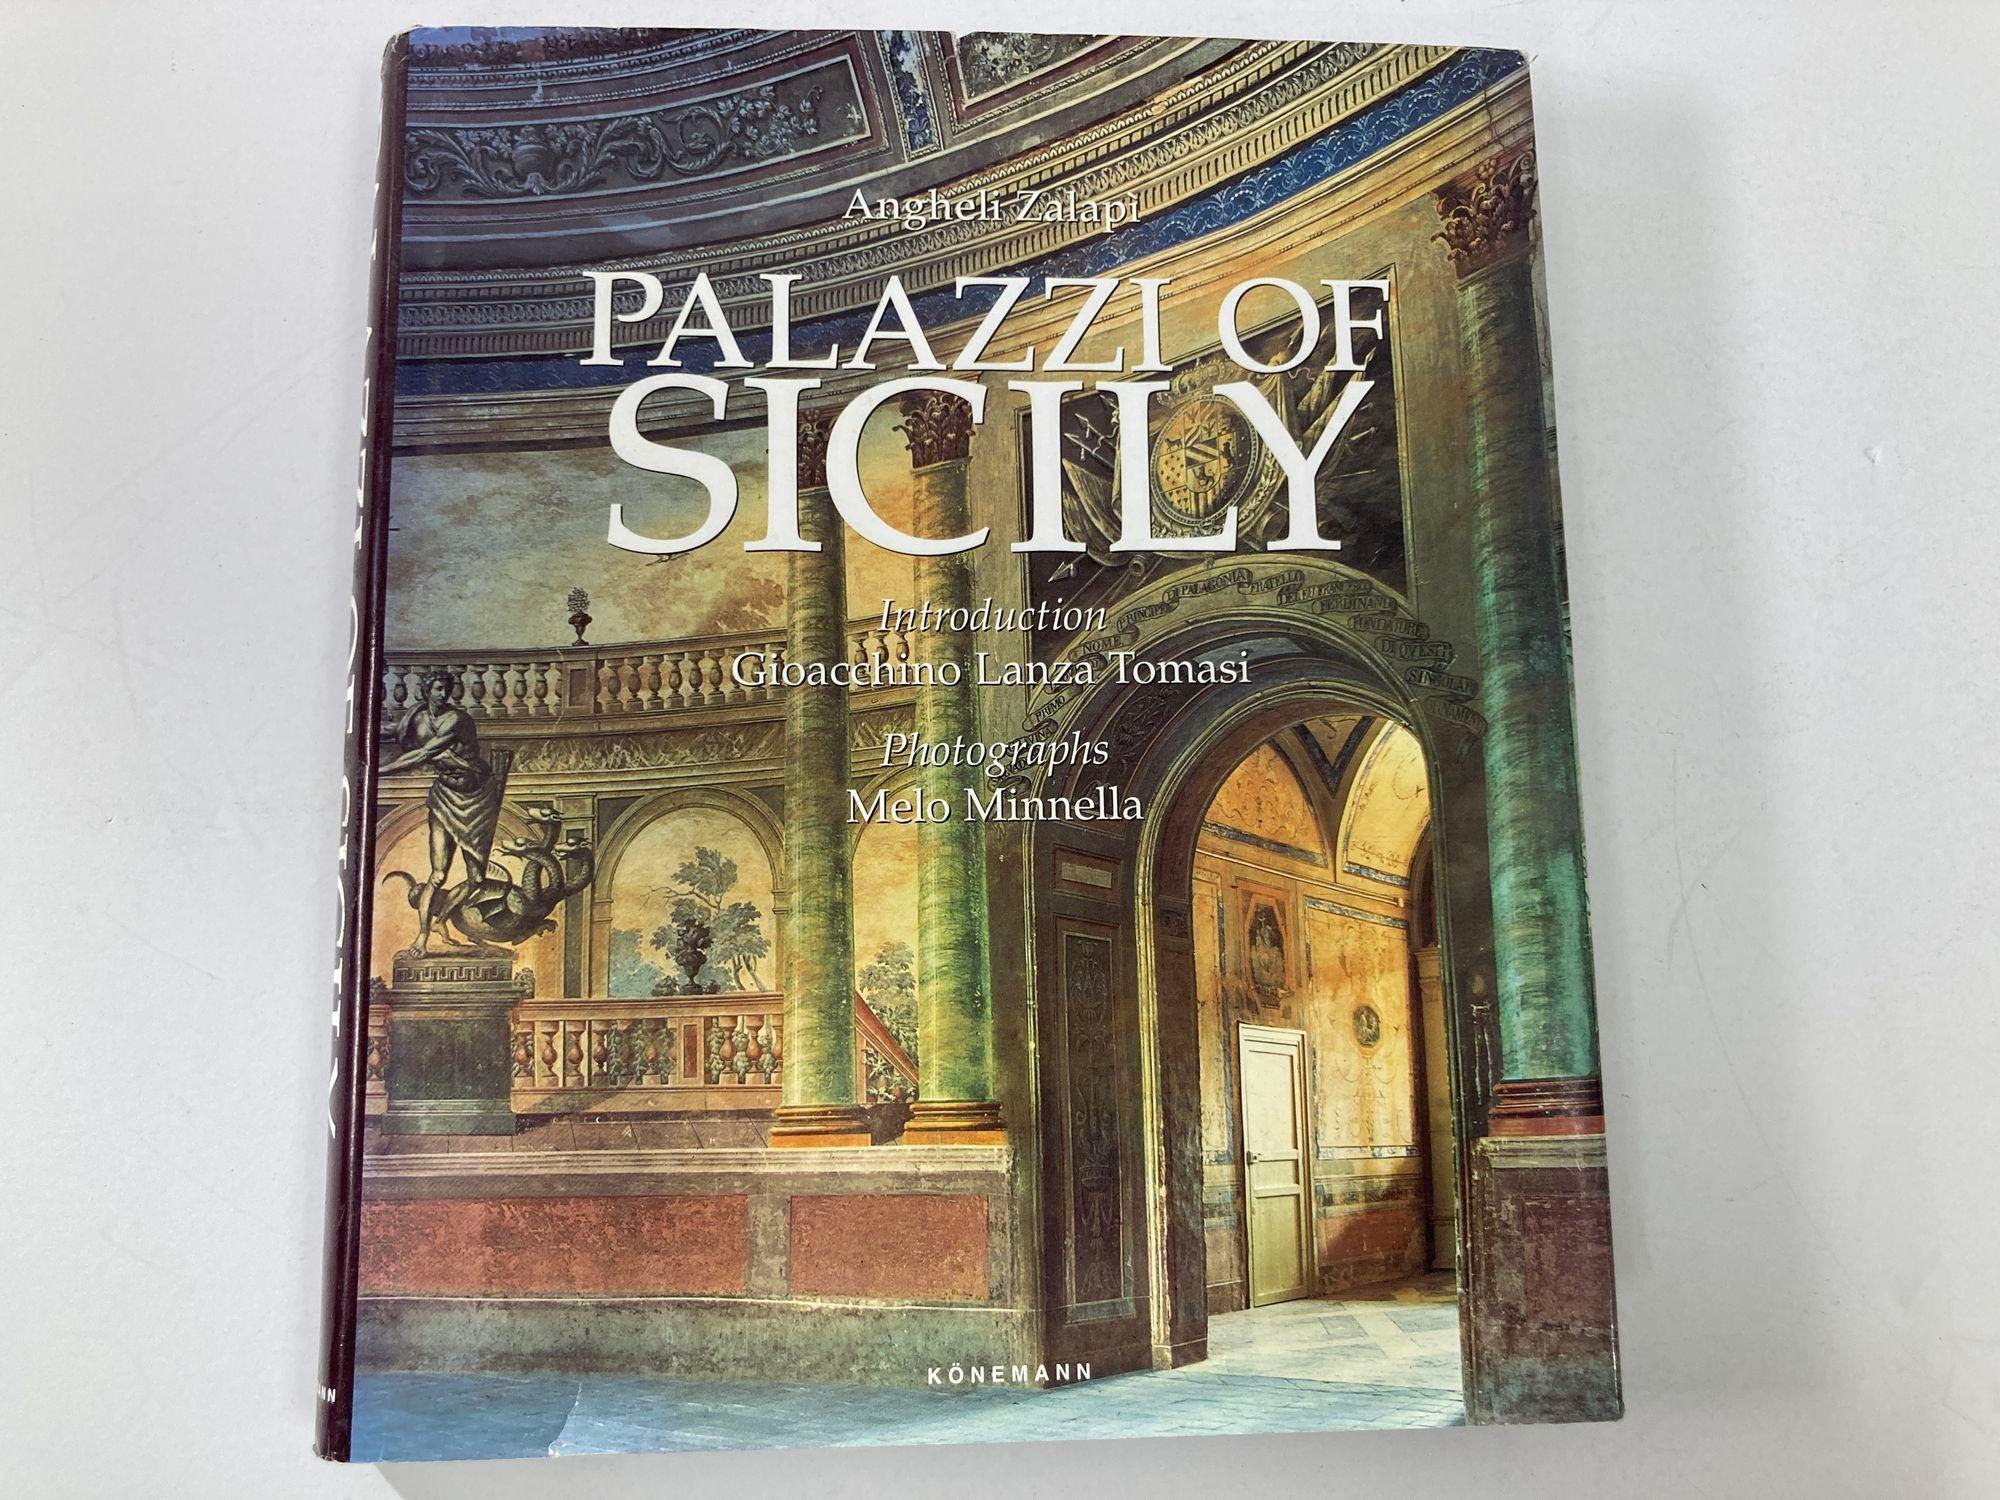 Palazzi of Sicily par Angheli Zalapi Couverture rigide.
Ce livre est le premier à retracer l'évolution du style des fabuleuses demeures construites sur l'île de Sicile, des châteaux féodaux aux hôtels particuliers et aux villas de